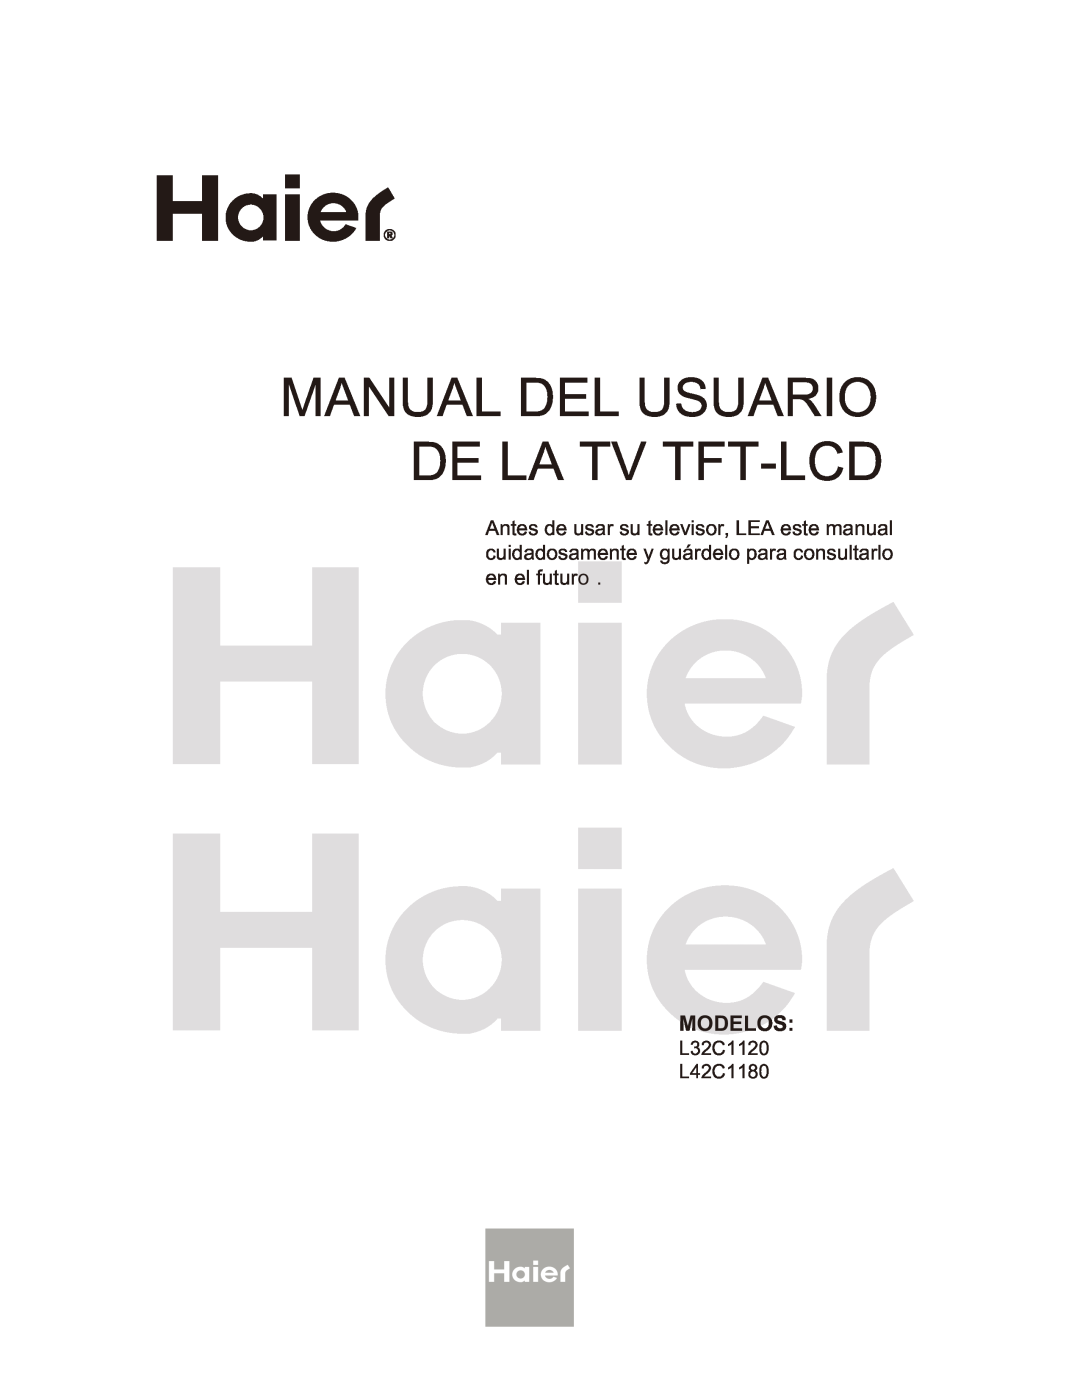 Haier L32C1180 owner manual Manual Del Usuario De La Tv Tft-Lcd, Modelos, L32C1120 L42C1180 